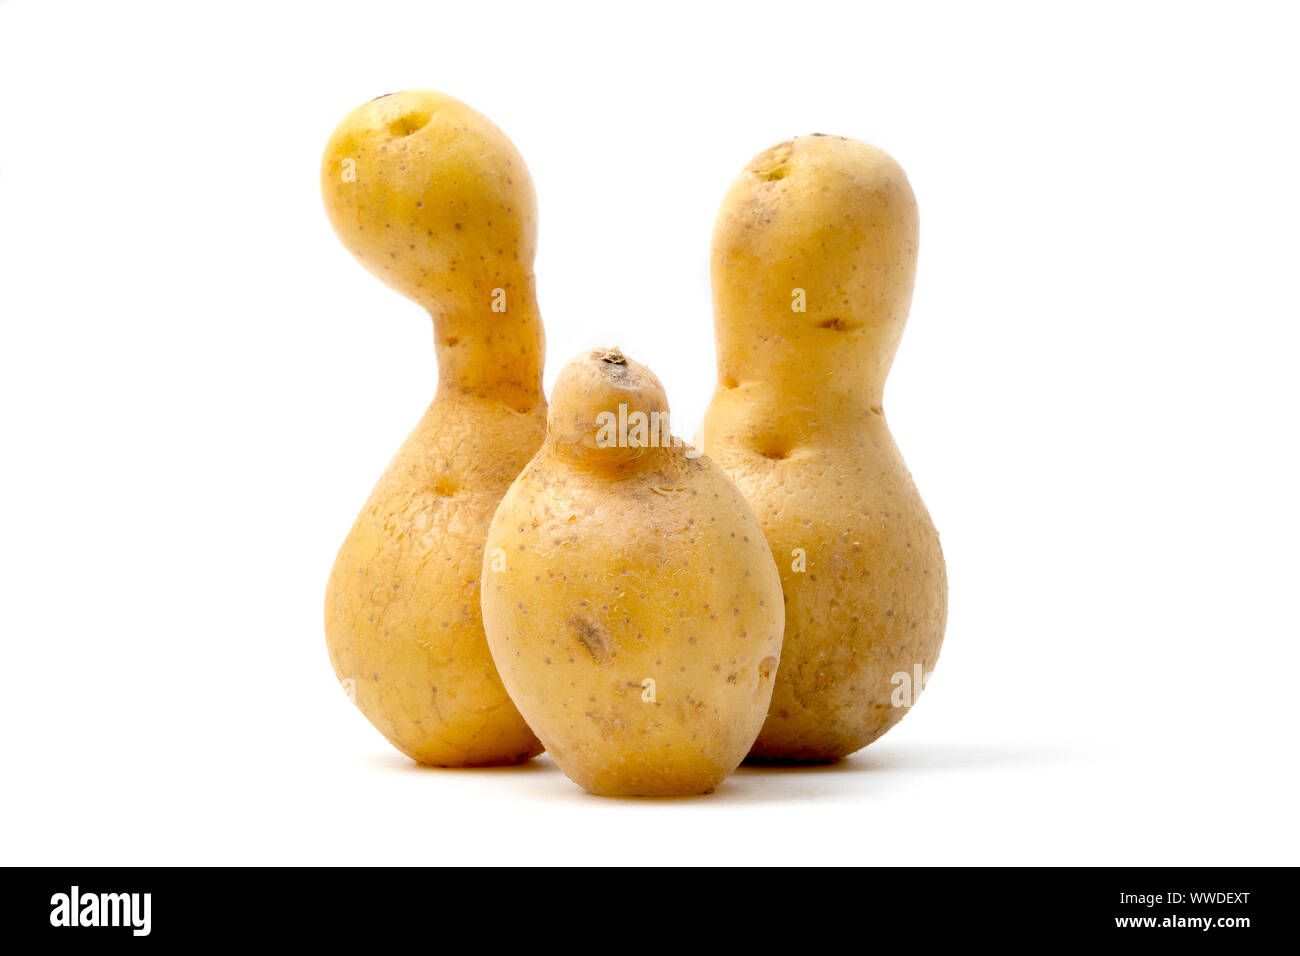 Les pommes de terre de forme bizarre (Solanum tuberosum) sur un fond blanc Banque D'Images